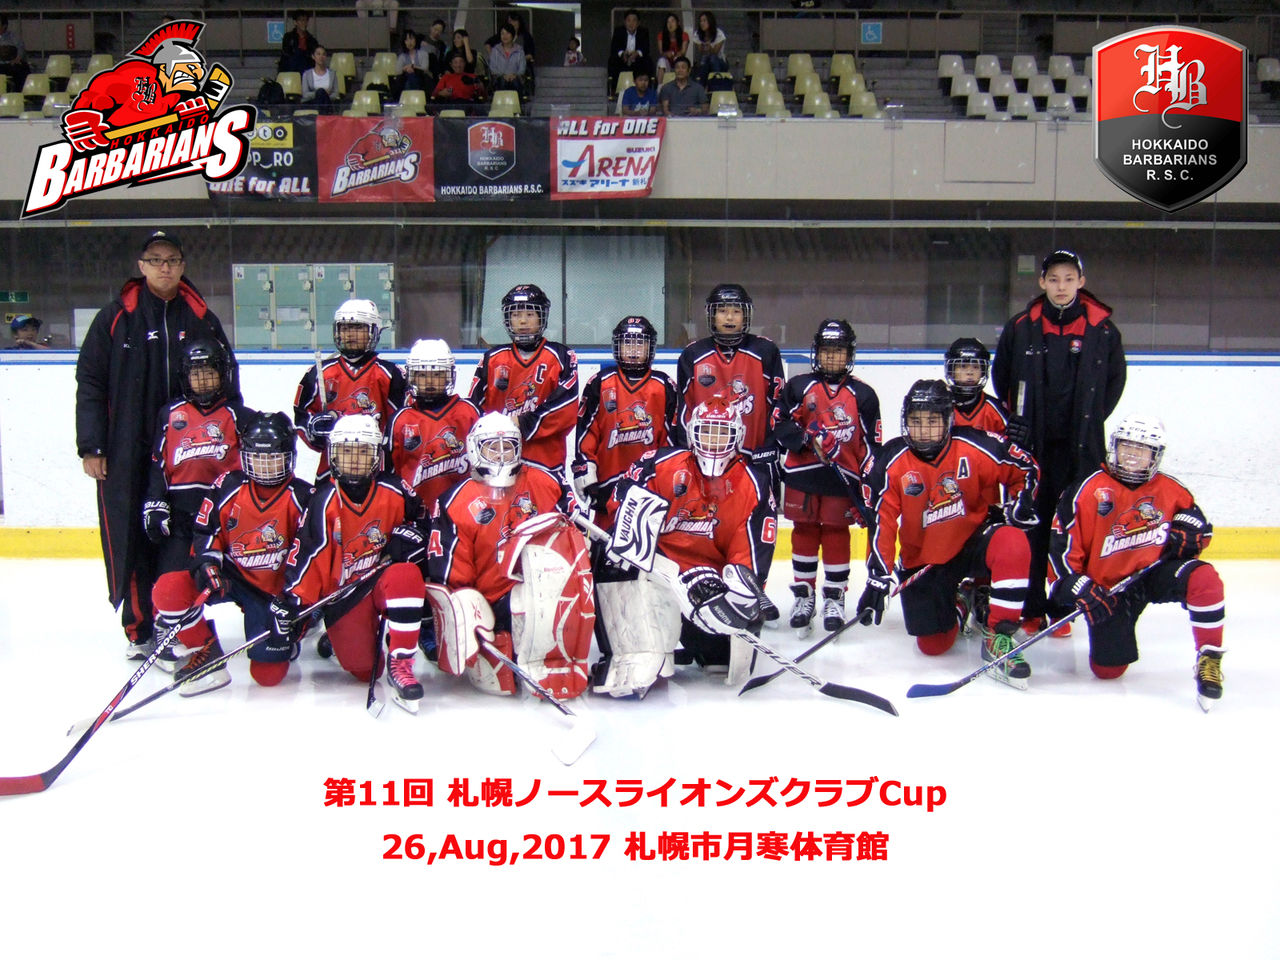 第11回 札幌ノースライオンズクラブcup結果 北海道ﾊﾞｰﾊﾞﾘｱﾝｽﾞ Jrｱｲｽﾎｯｹｰｸﾗﾌﾞ